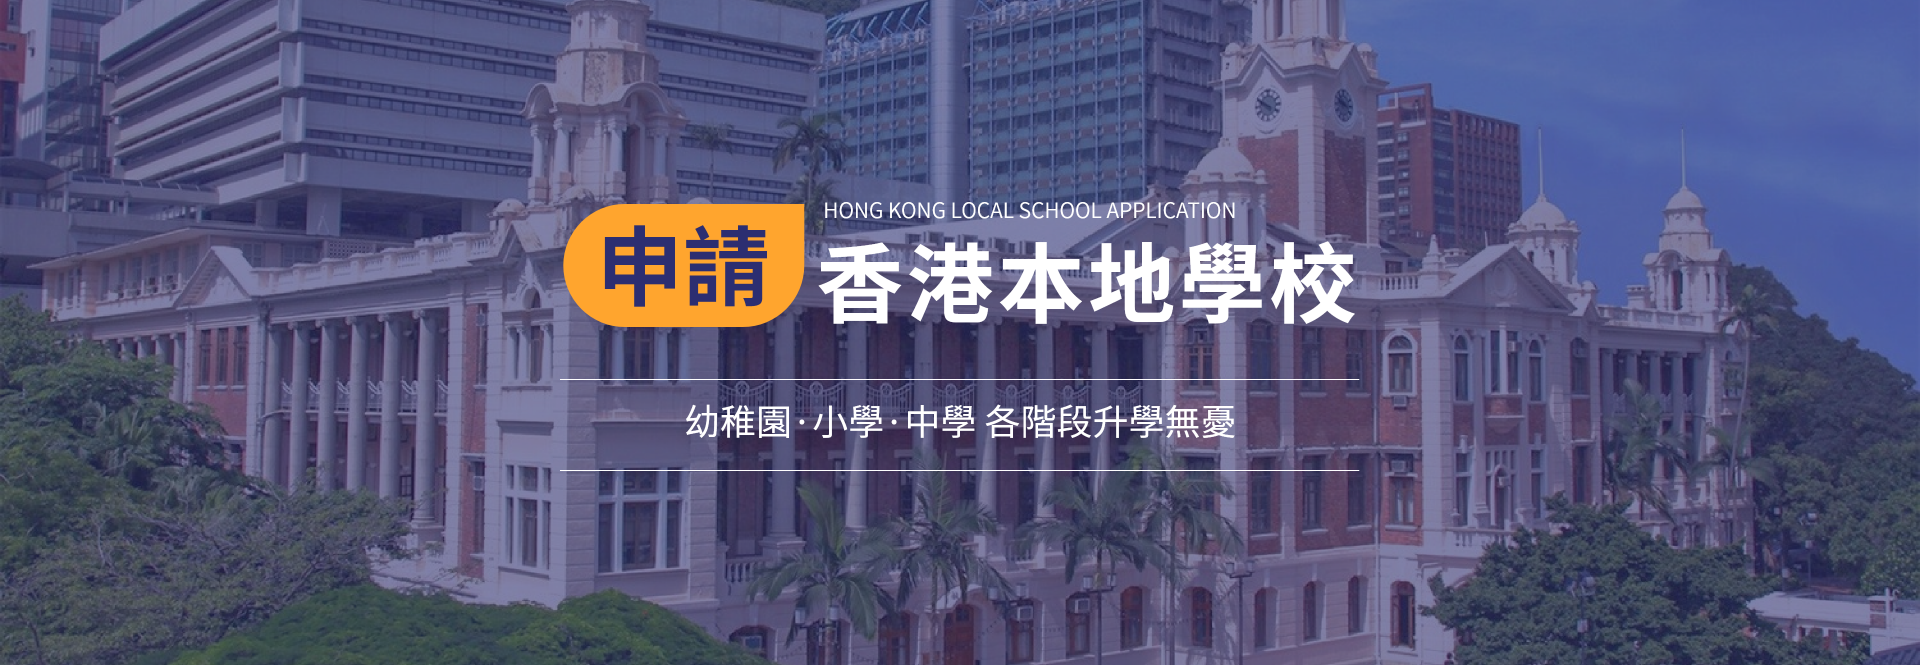 香港优质学校一站式VIP名校升学服务